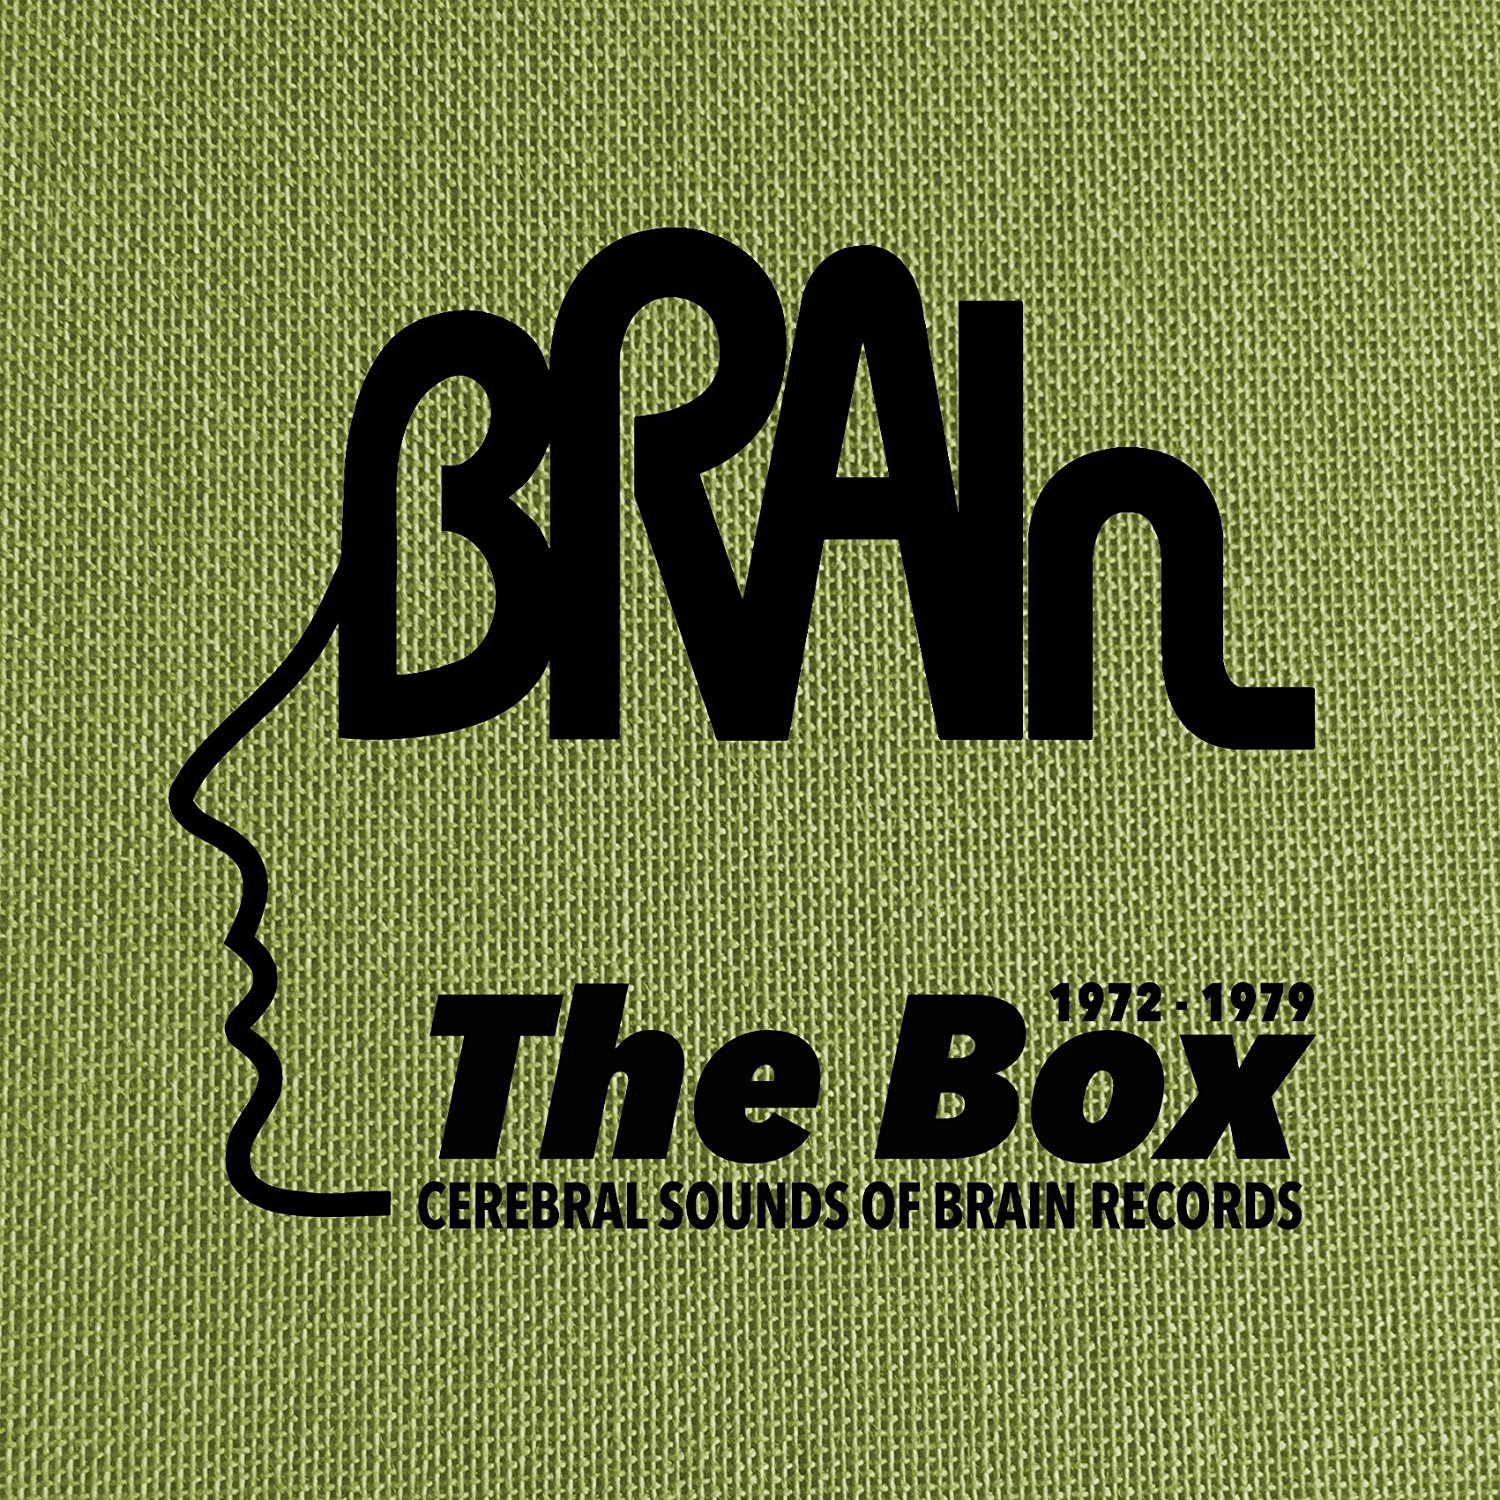 brain box